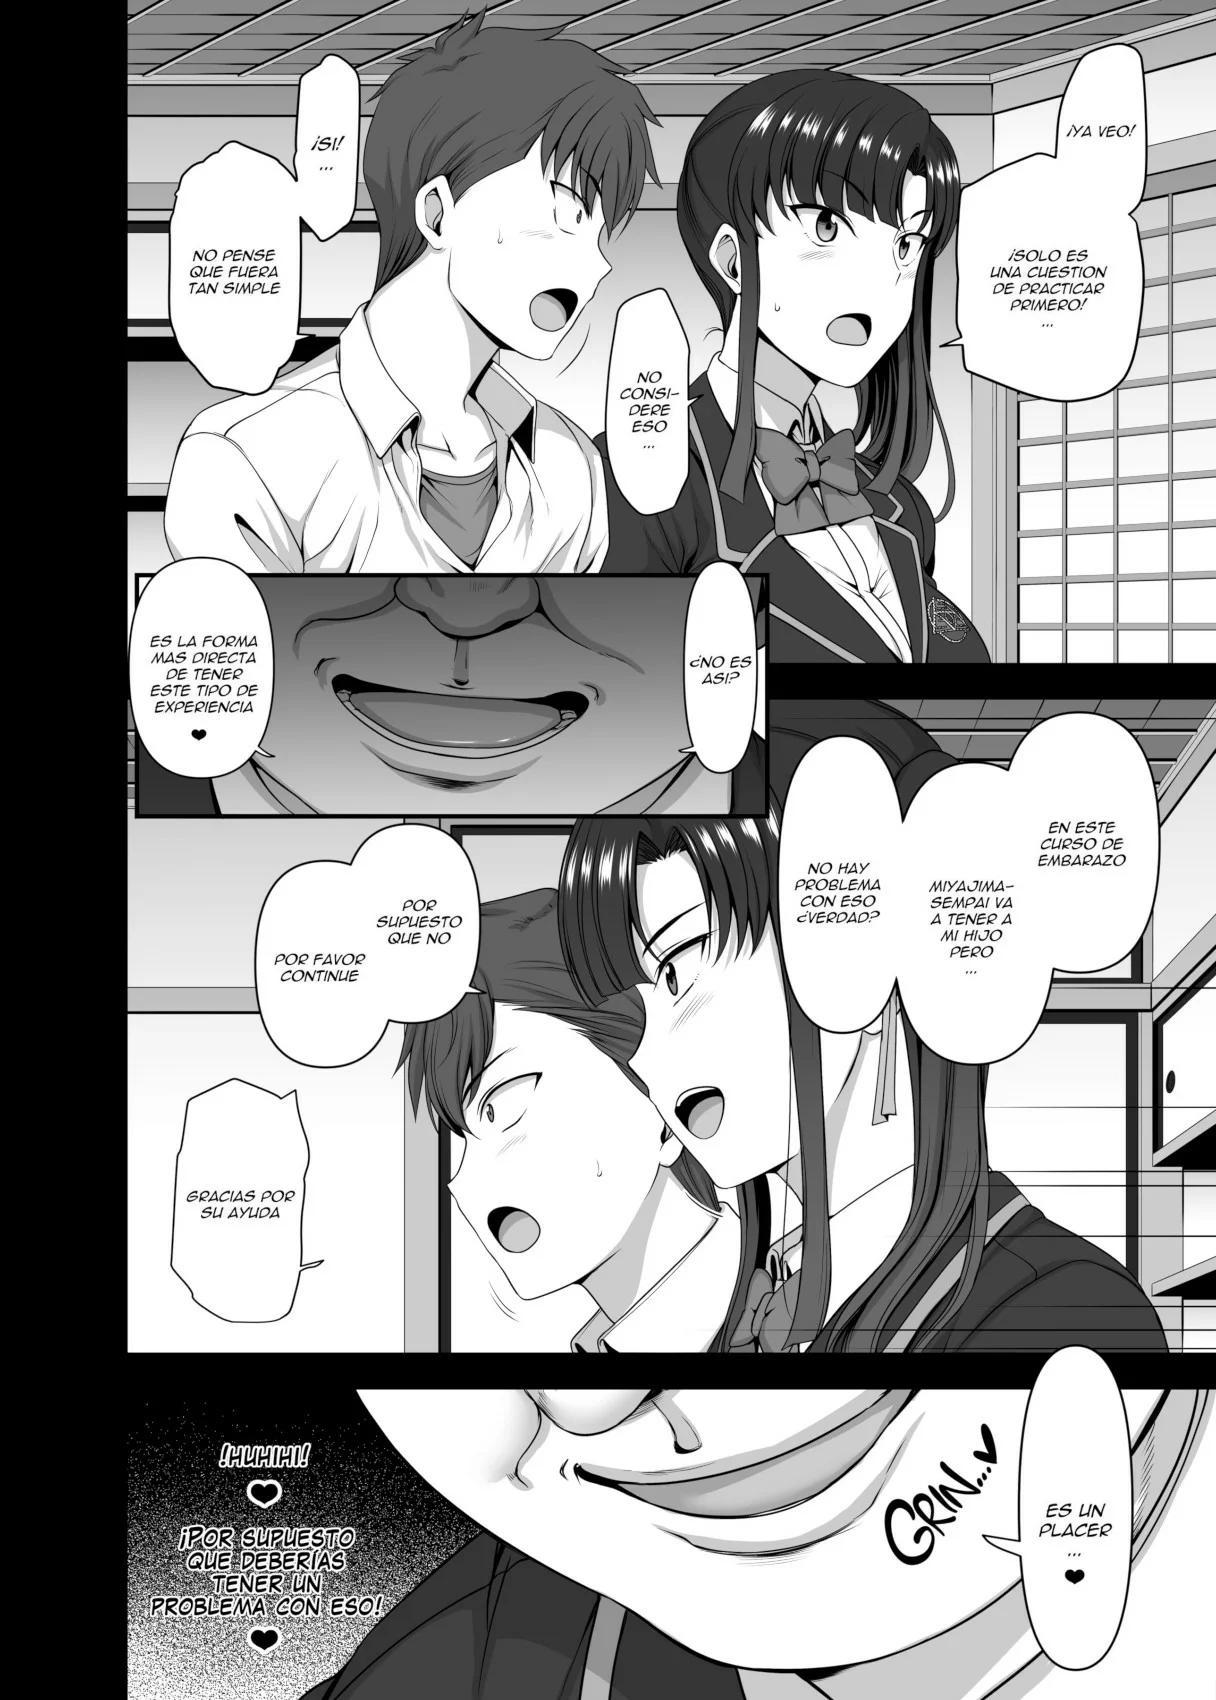 05 Hypnotic Sexual Counseling 3 Sakura Miyajima and Kase Masafumi - 8